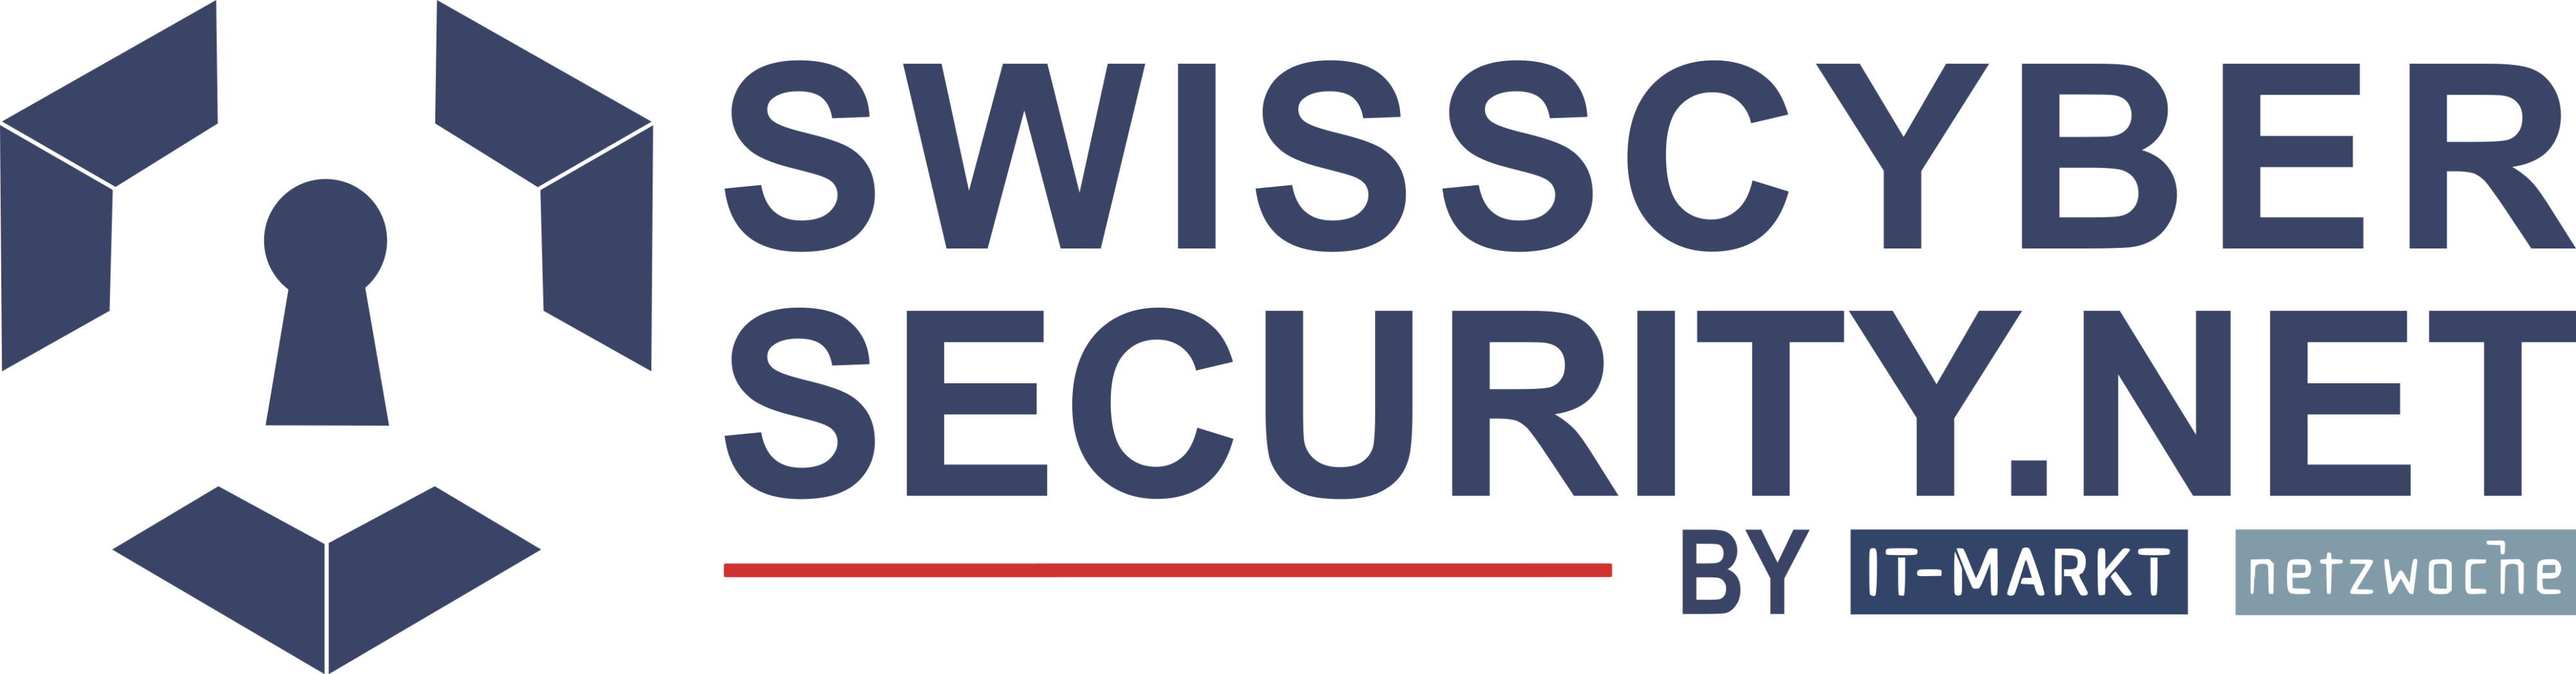 SwissCyberSecurity.net 